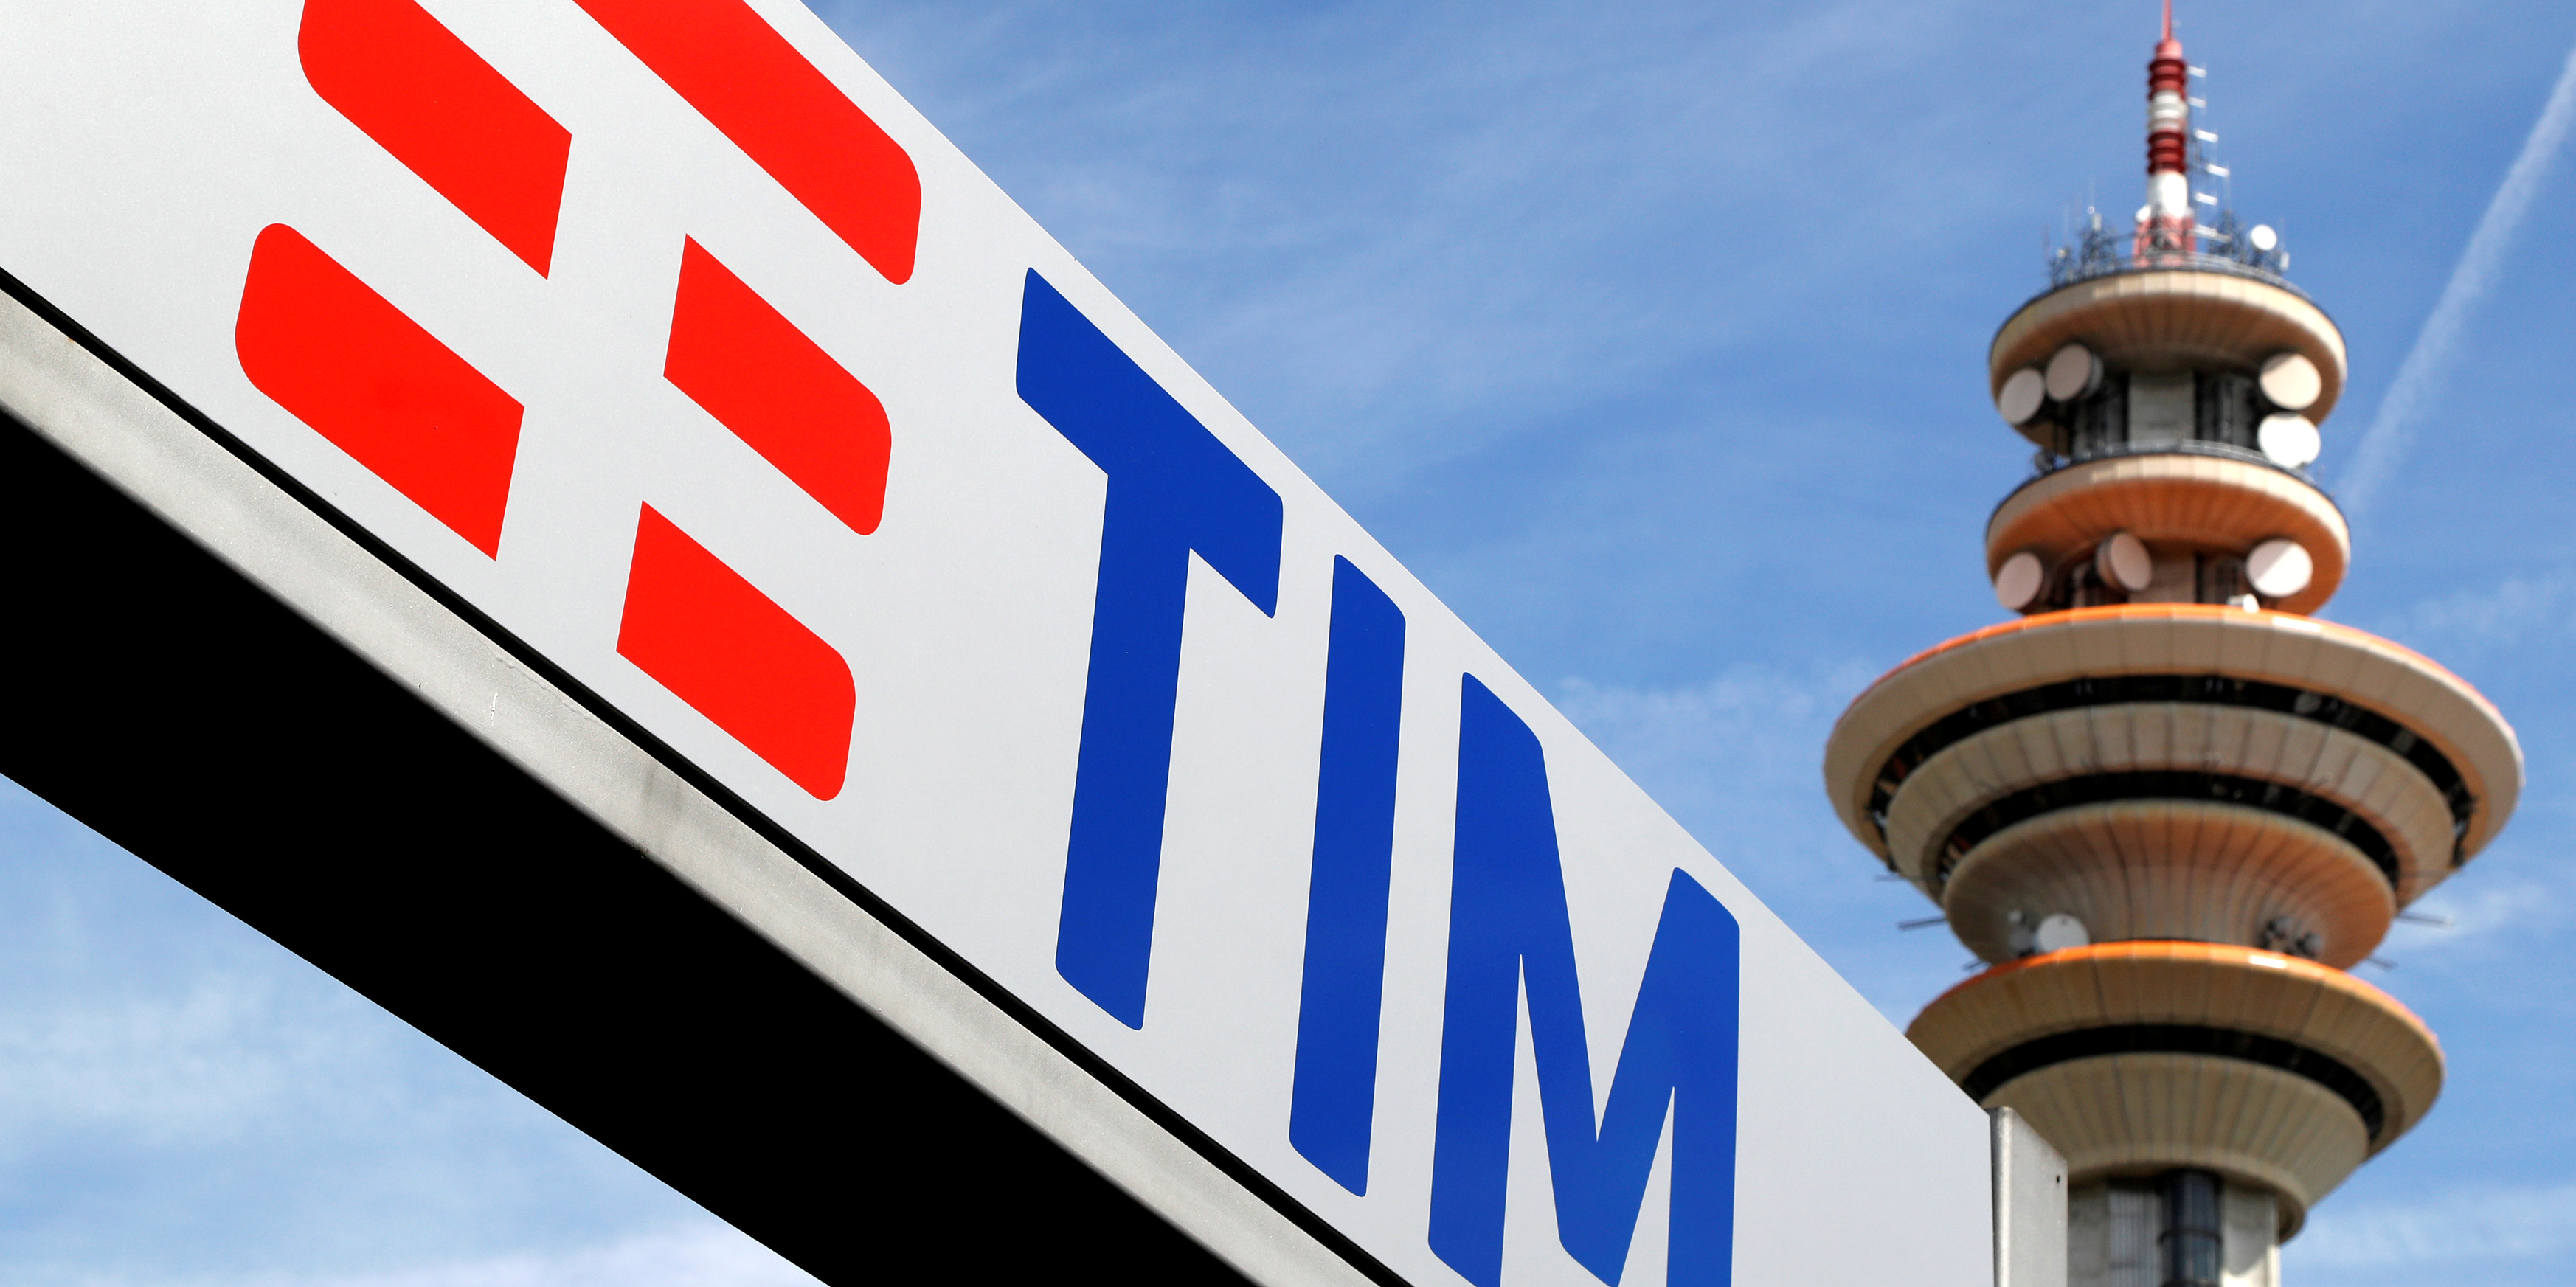 Les grandes manoeuvres se poursuivent chez Telecom Italia